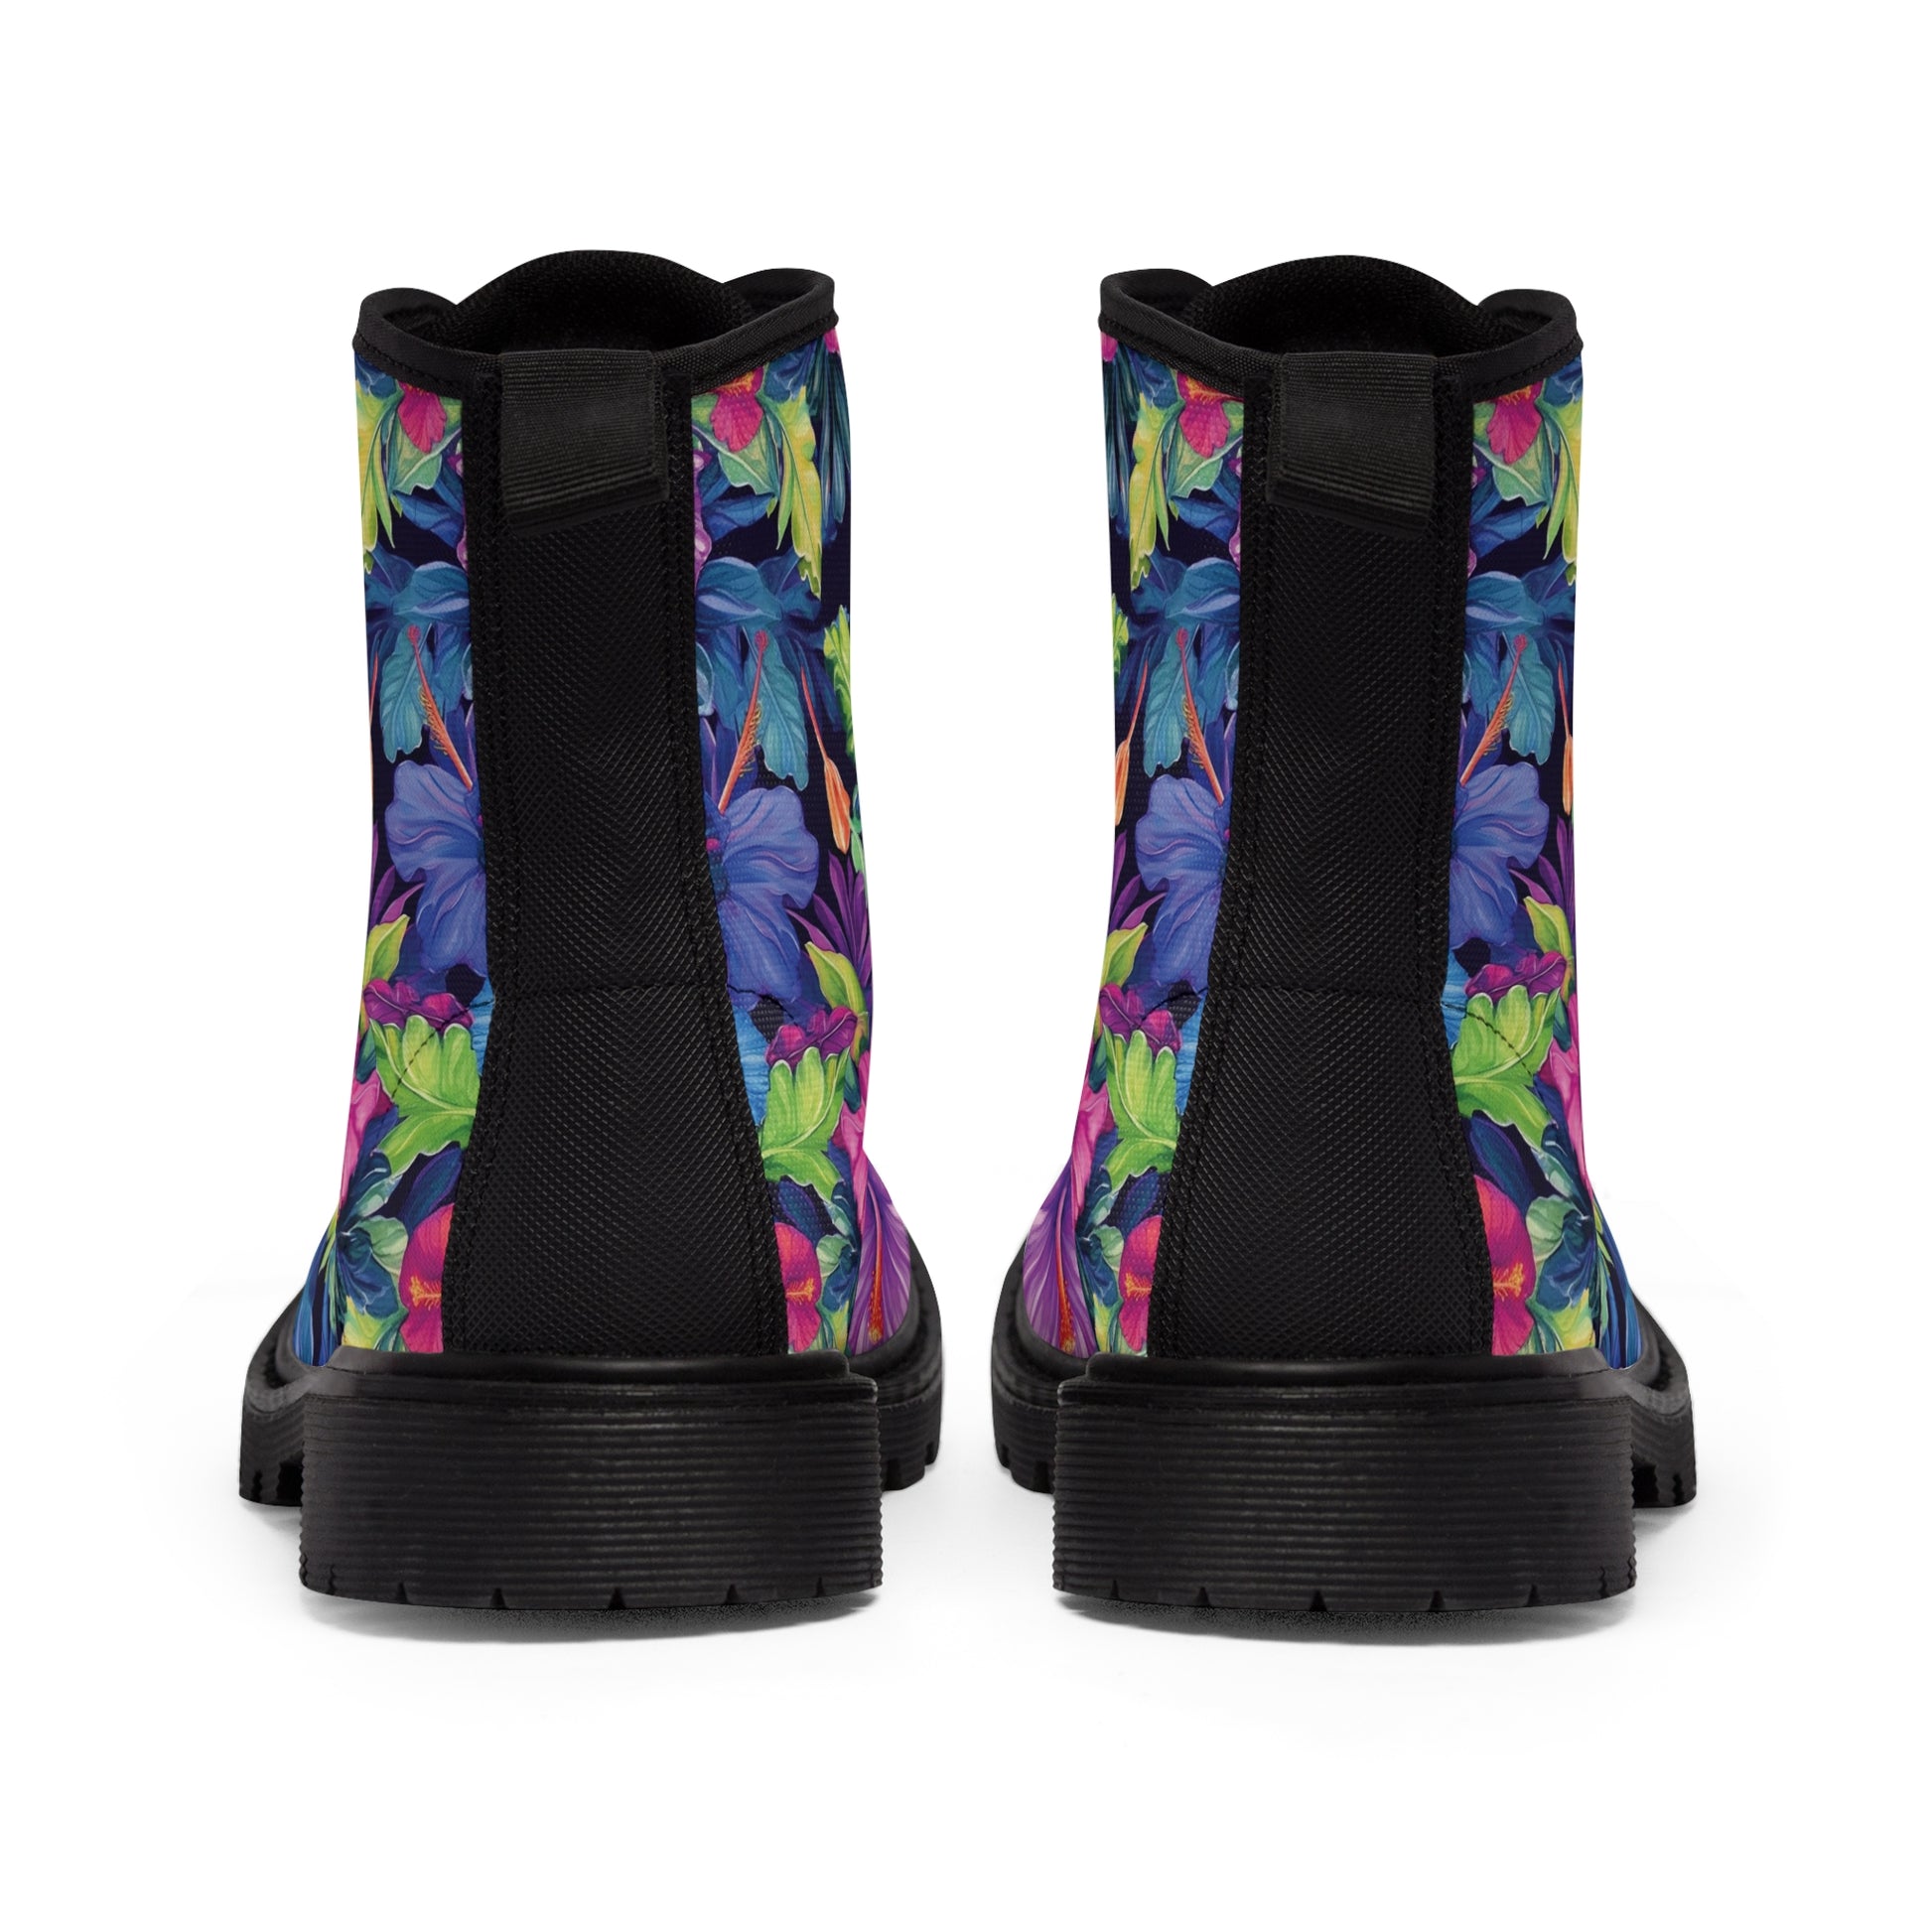 Watercolor Hibiscus (Dark #4) Men's Canvas Boots (Black) by Studio Ten Design